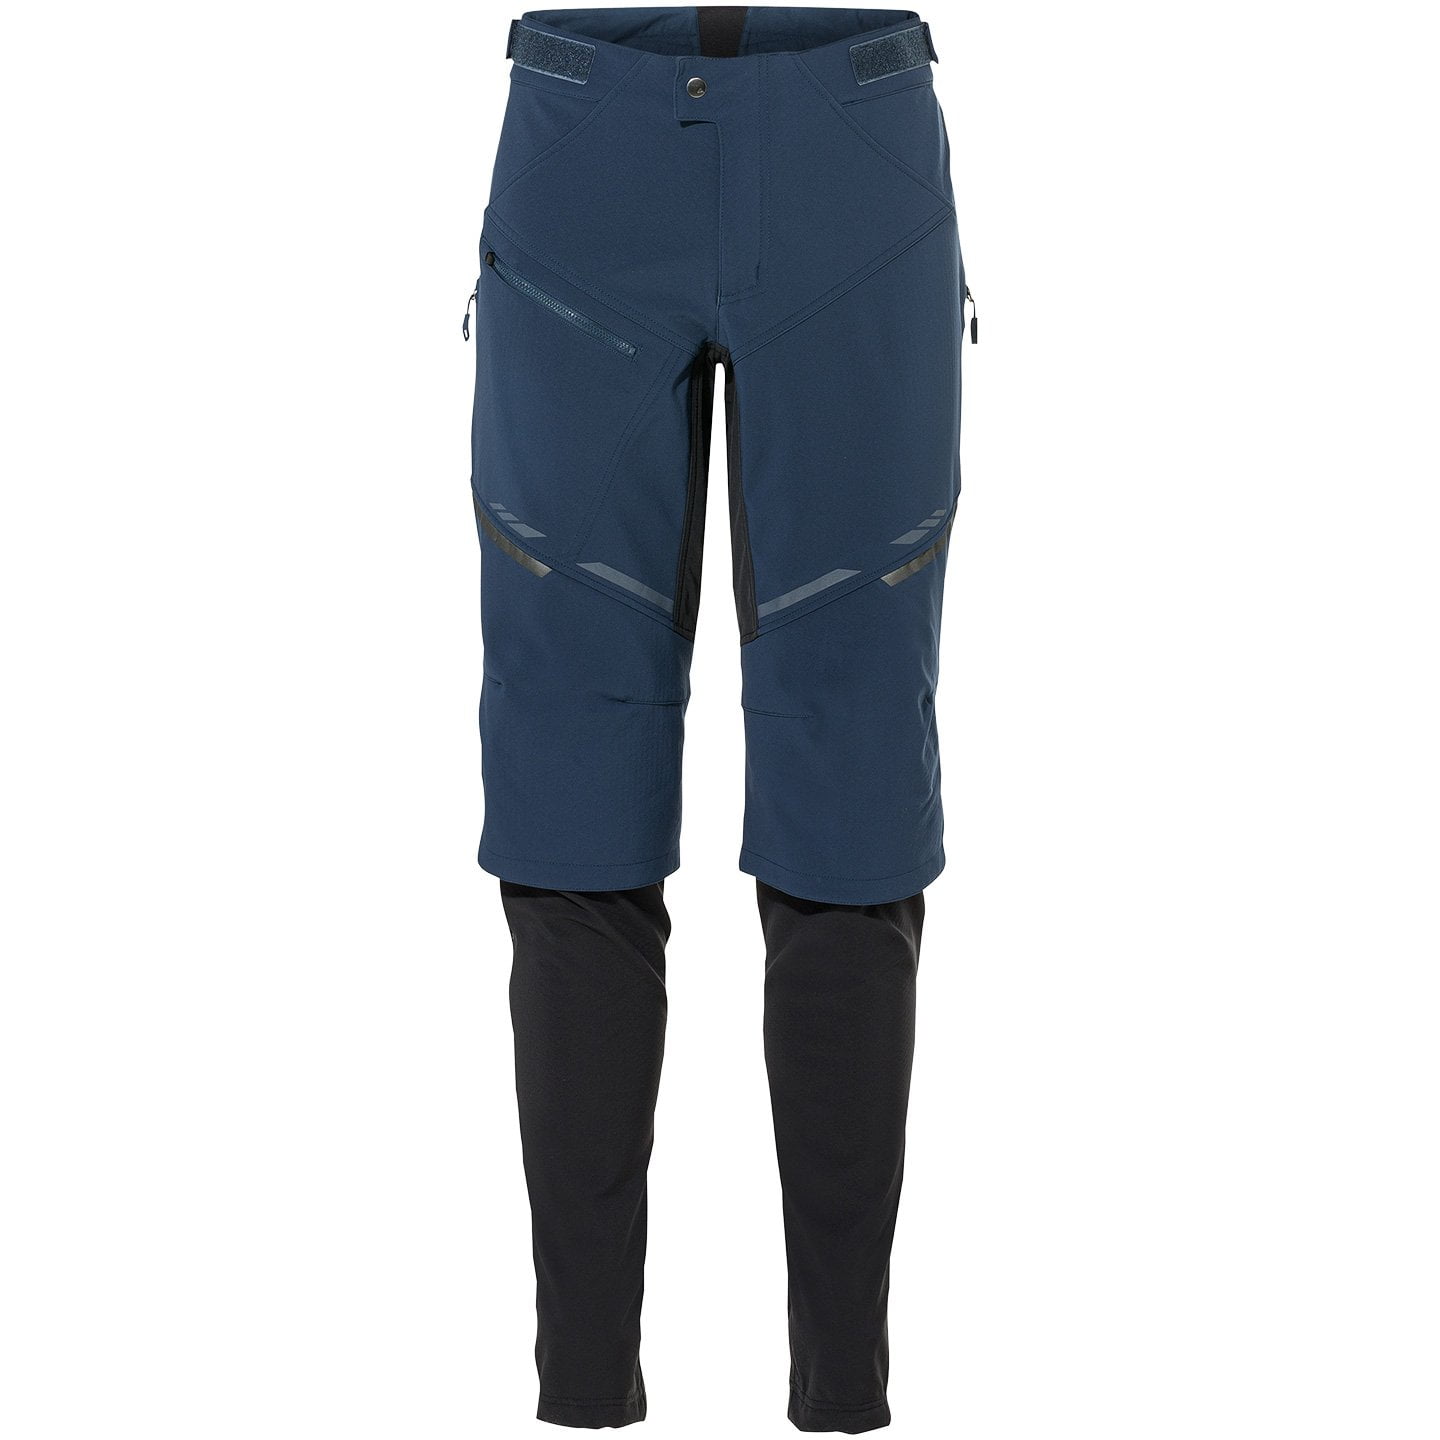 Virt II Long Bike Trousers w/o Pad Long Bike Pants, for men, size 2XL, Cycle shorts, Cycling clothing